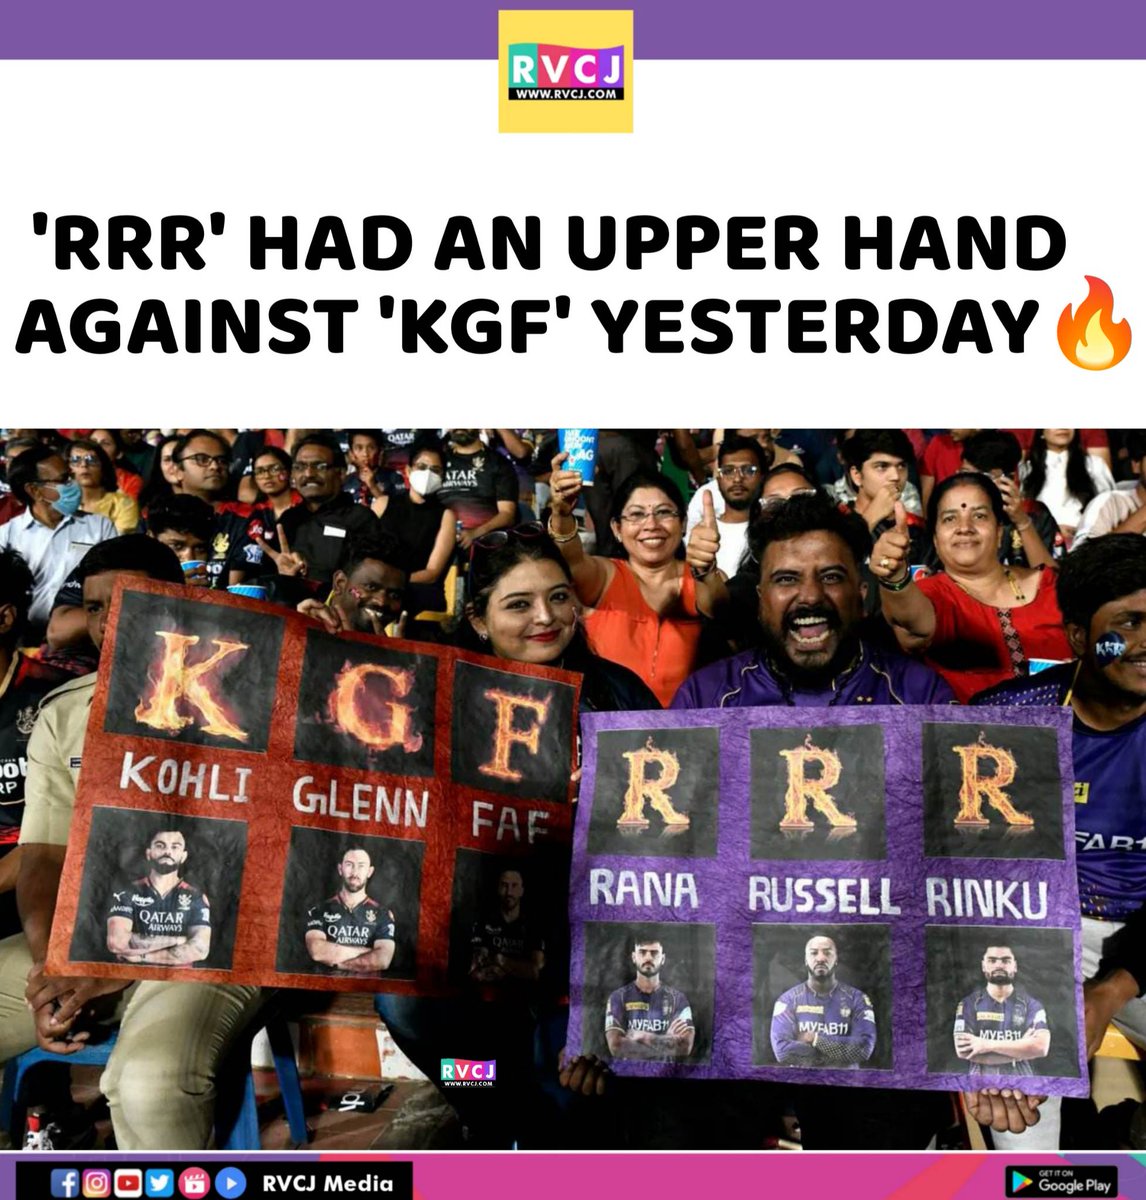 KGF vs RRR
#IPL2023 #RCBvKKR